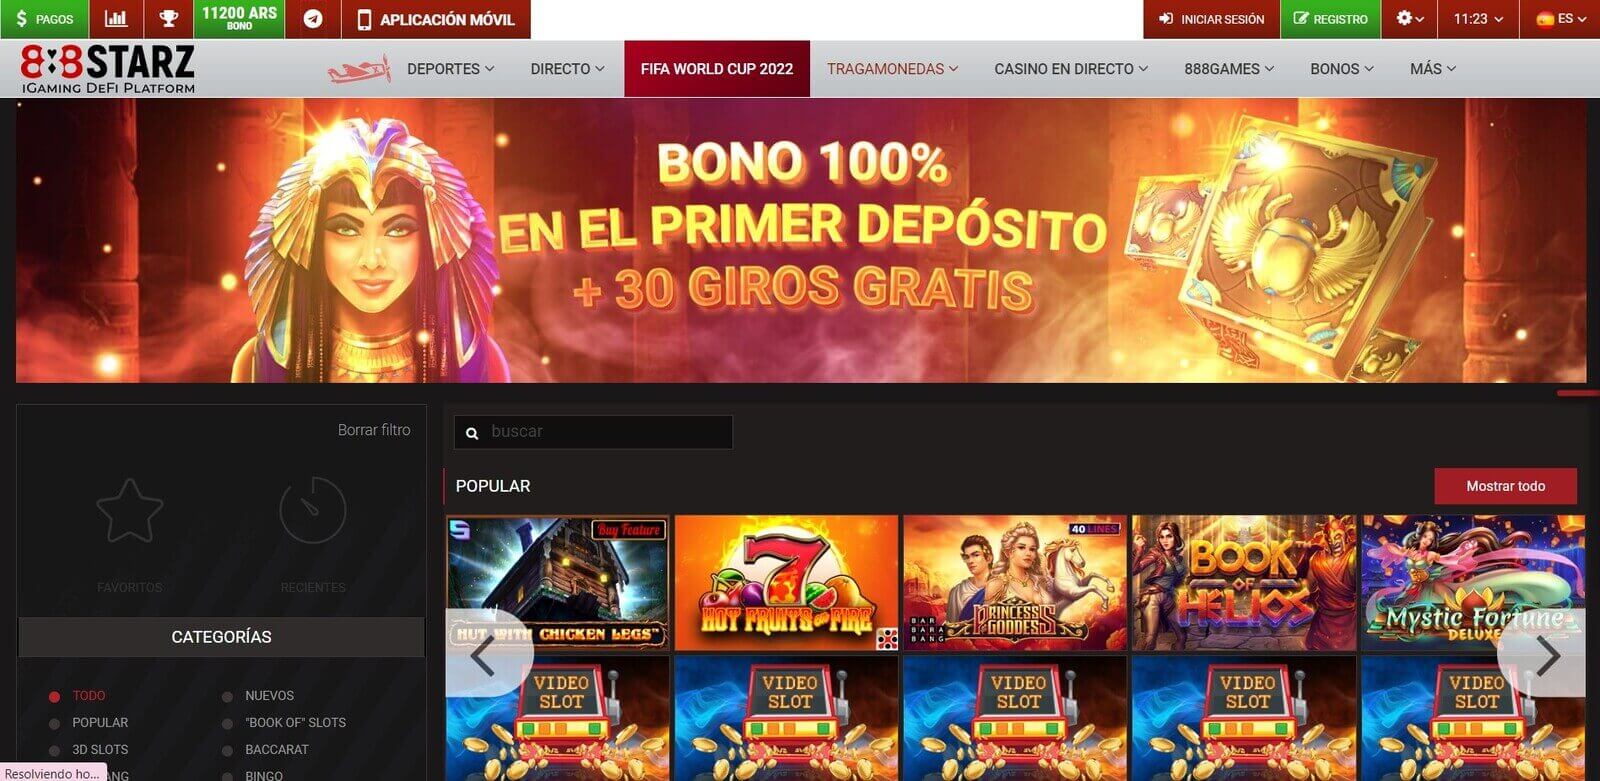 Reseña de 888StarzBet Casino online en Latinoamérica